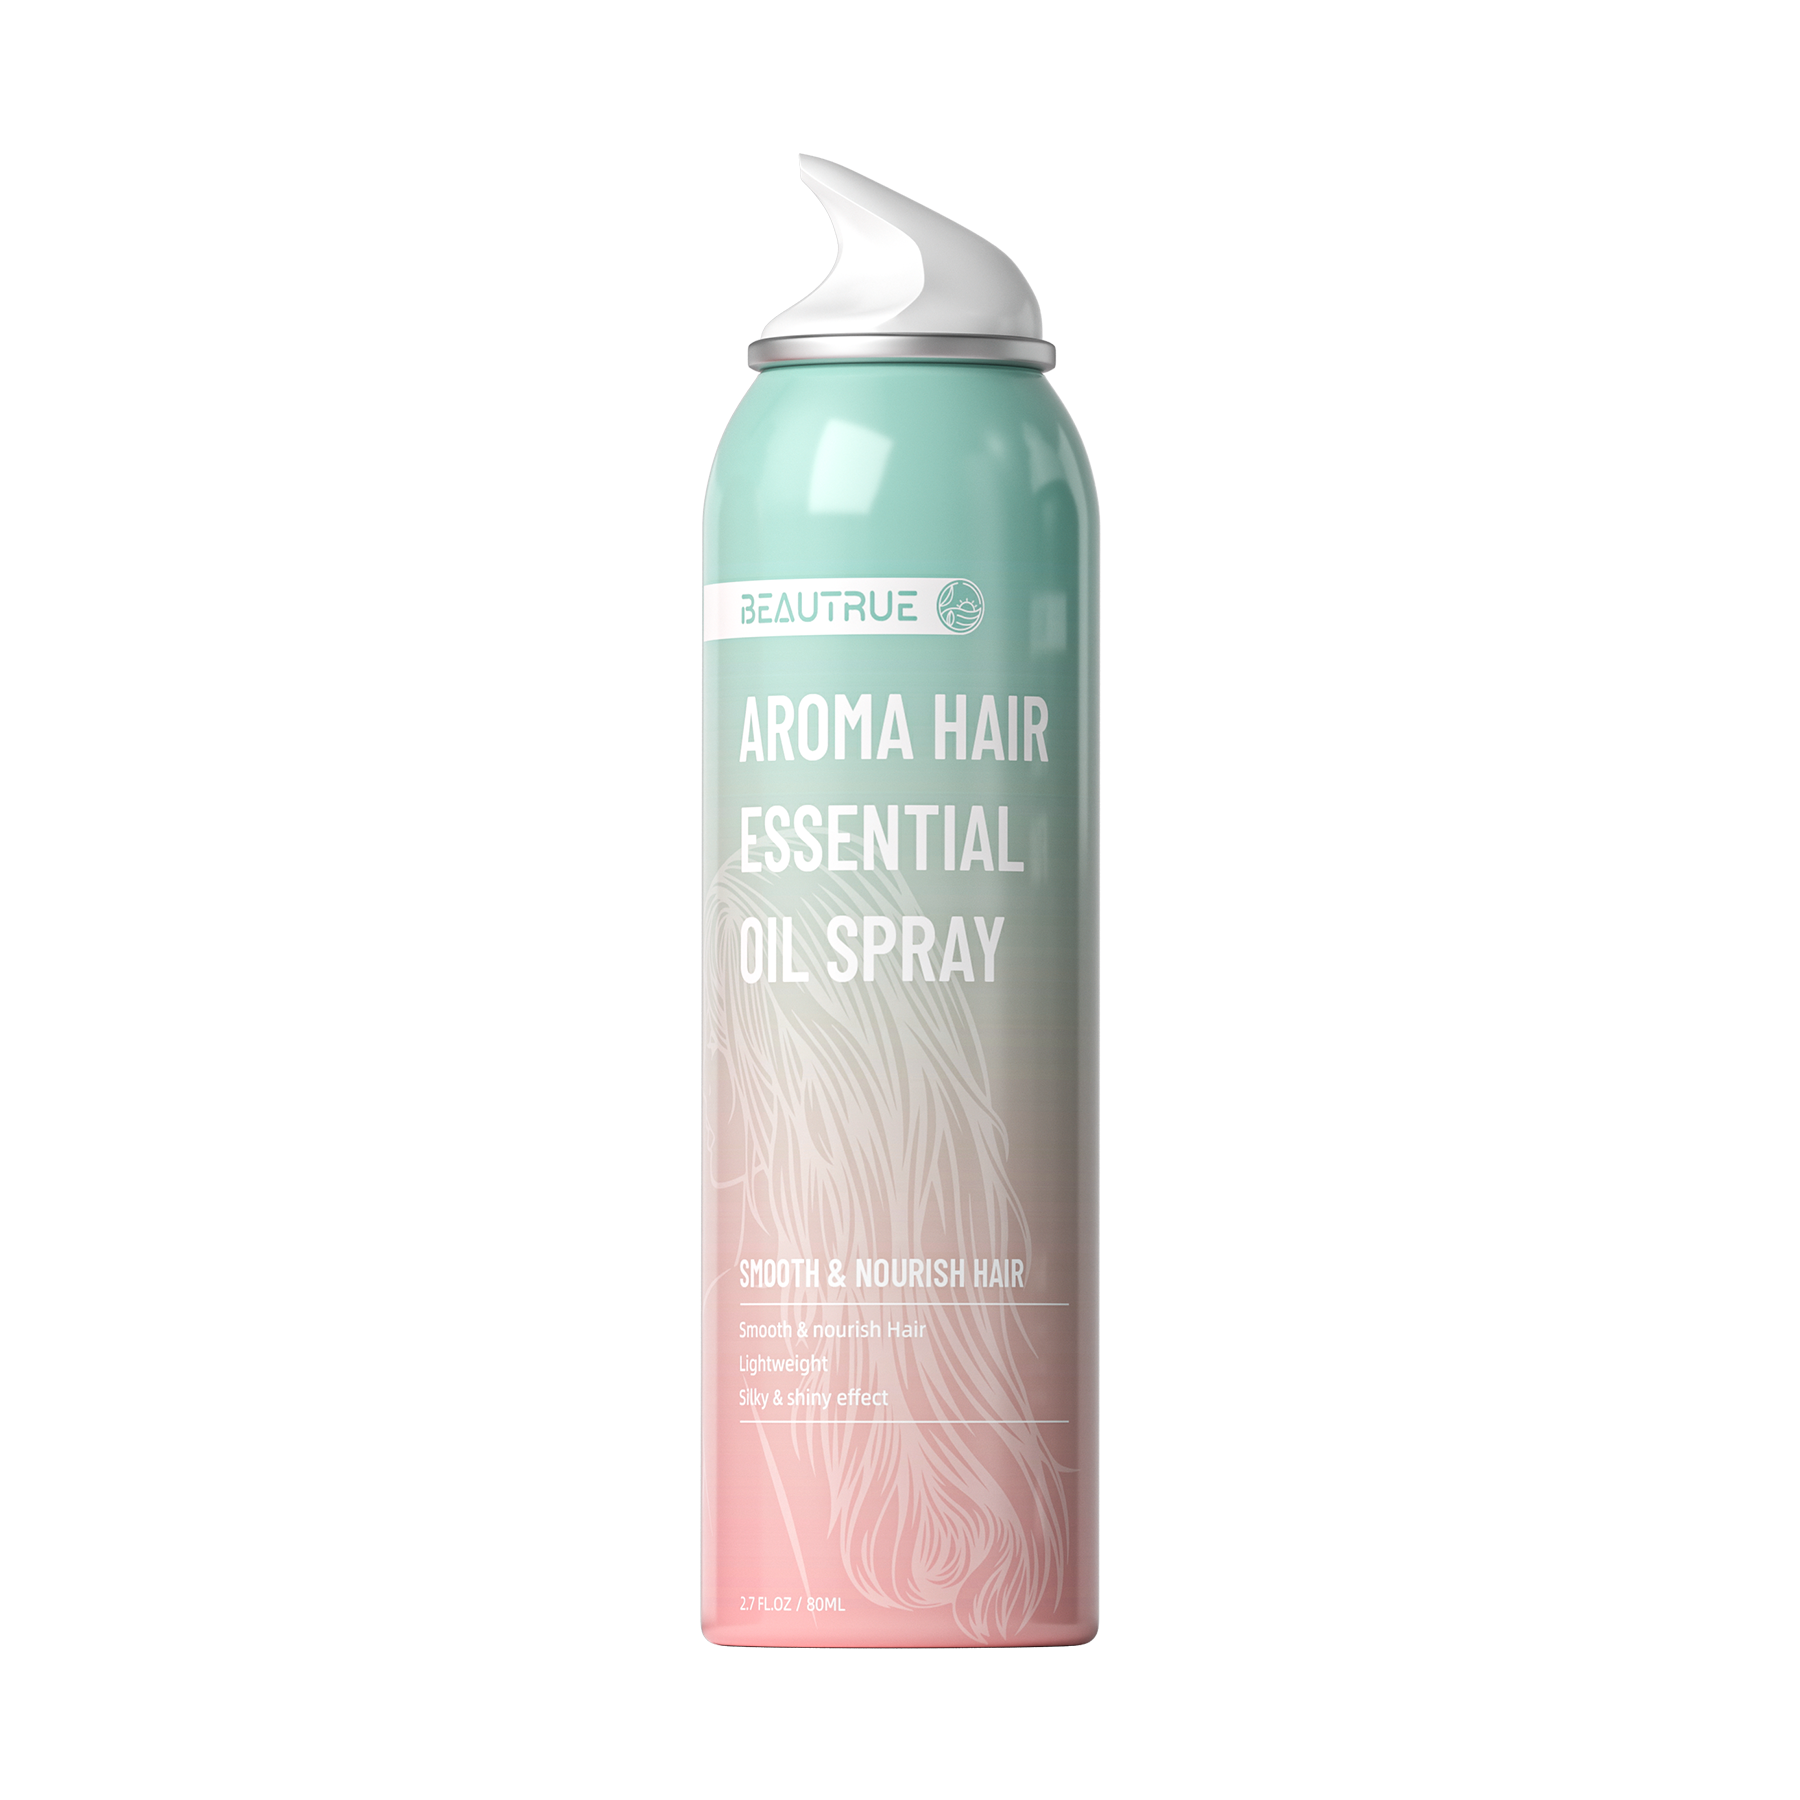 hair oil spray; aroma hair essential oil , hair perfume spray ; hair perfume